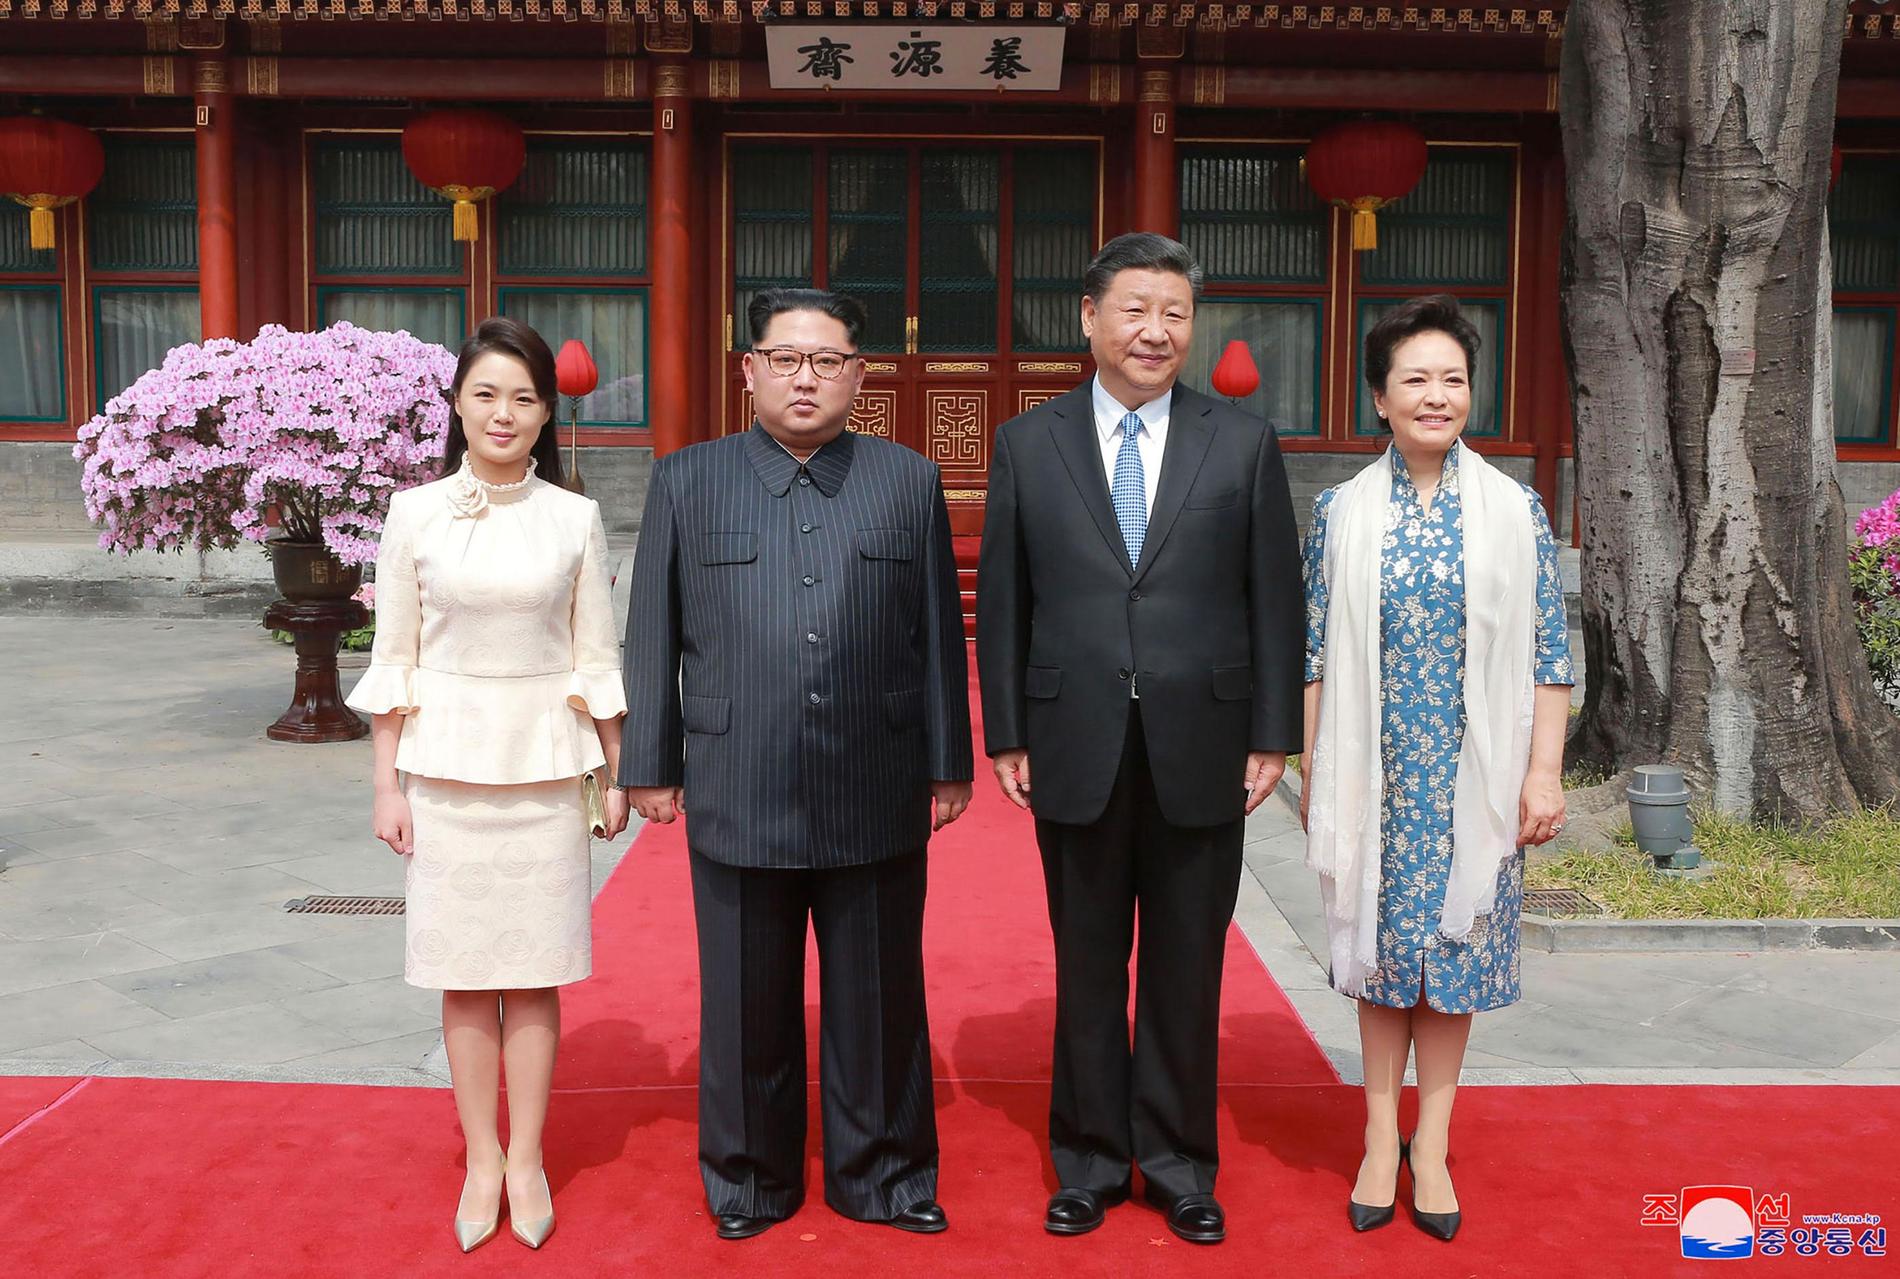 Ledarna och deras fruar poserade på flera bilder under Kims tvådagarsbesök i Peking.